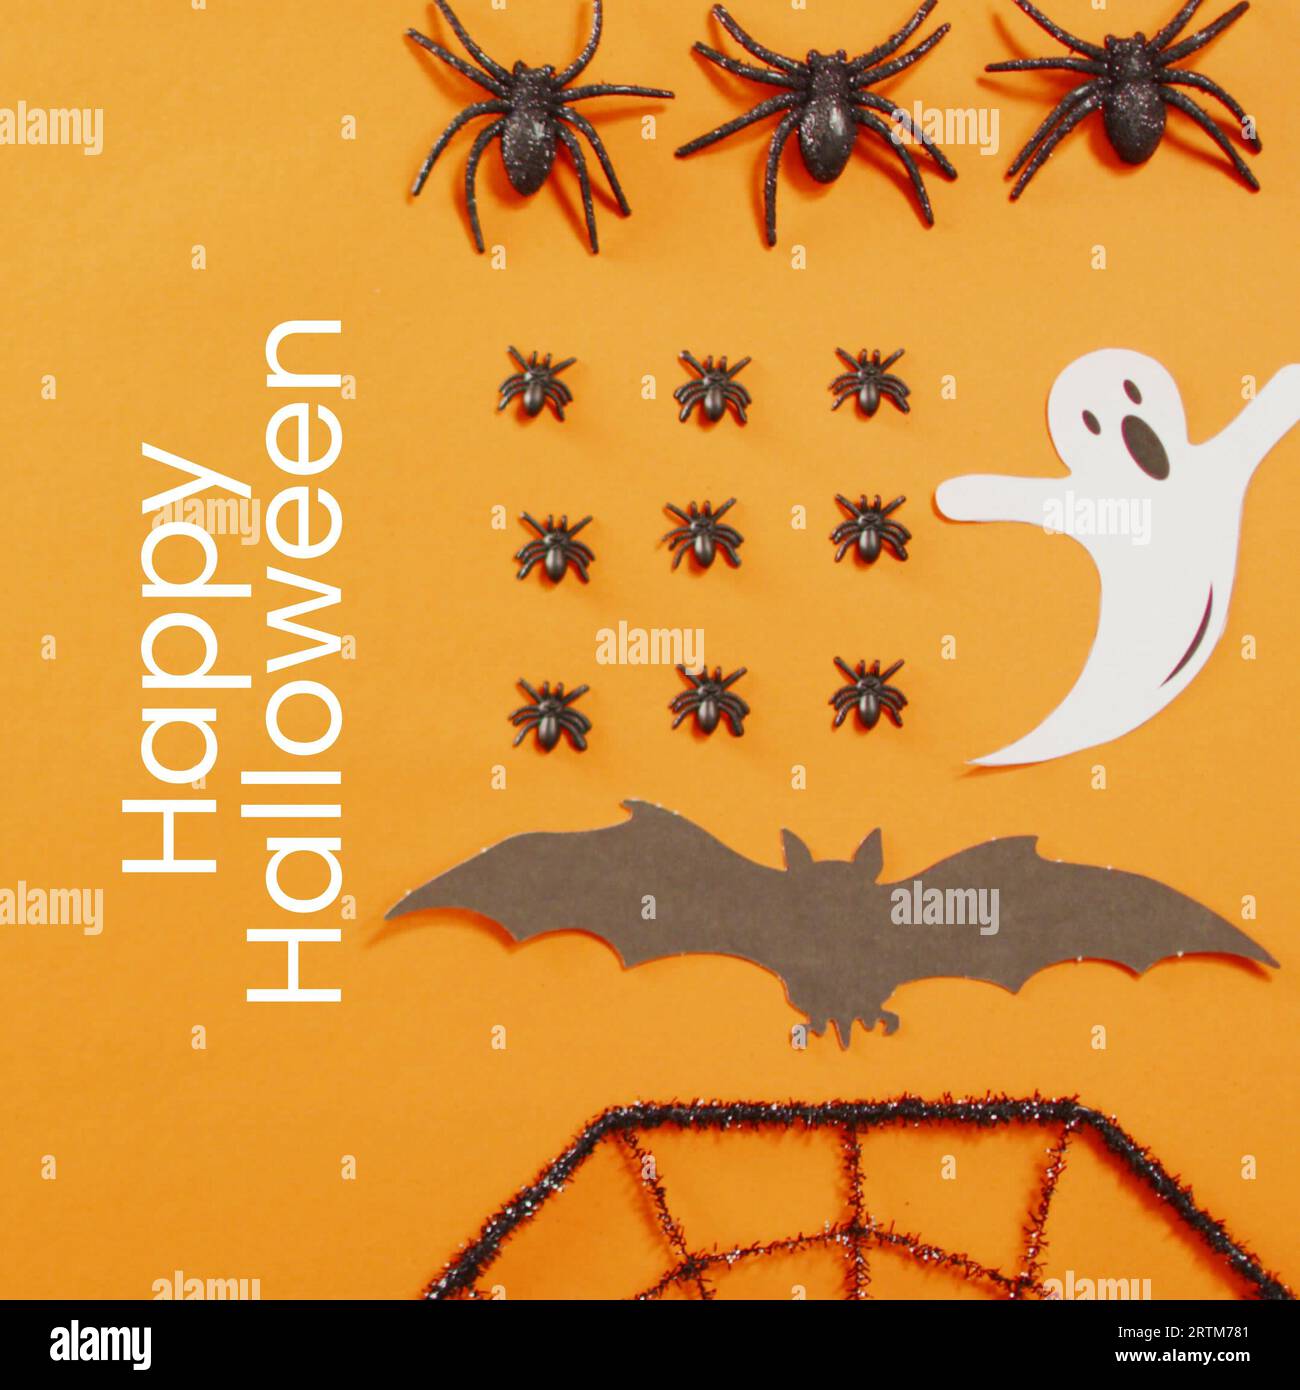 Testo felice di halloween con fantasmi, pipistrelli e insetti su sfondo arancione Foto Stock